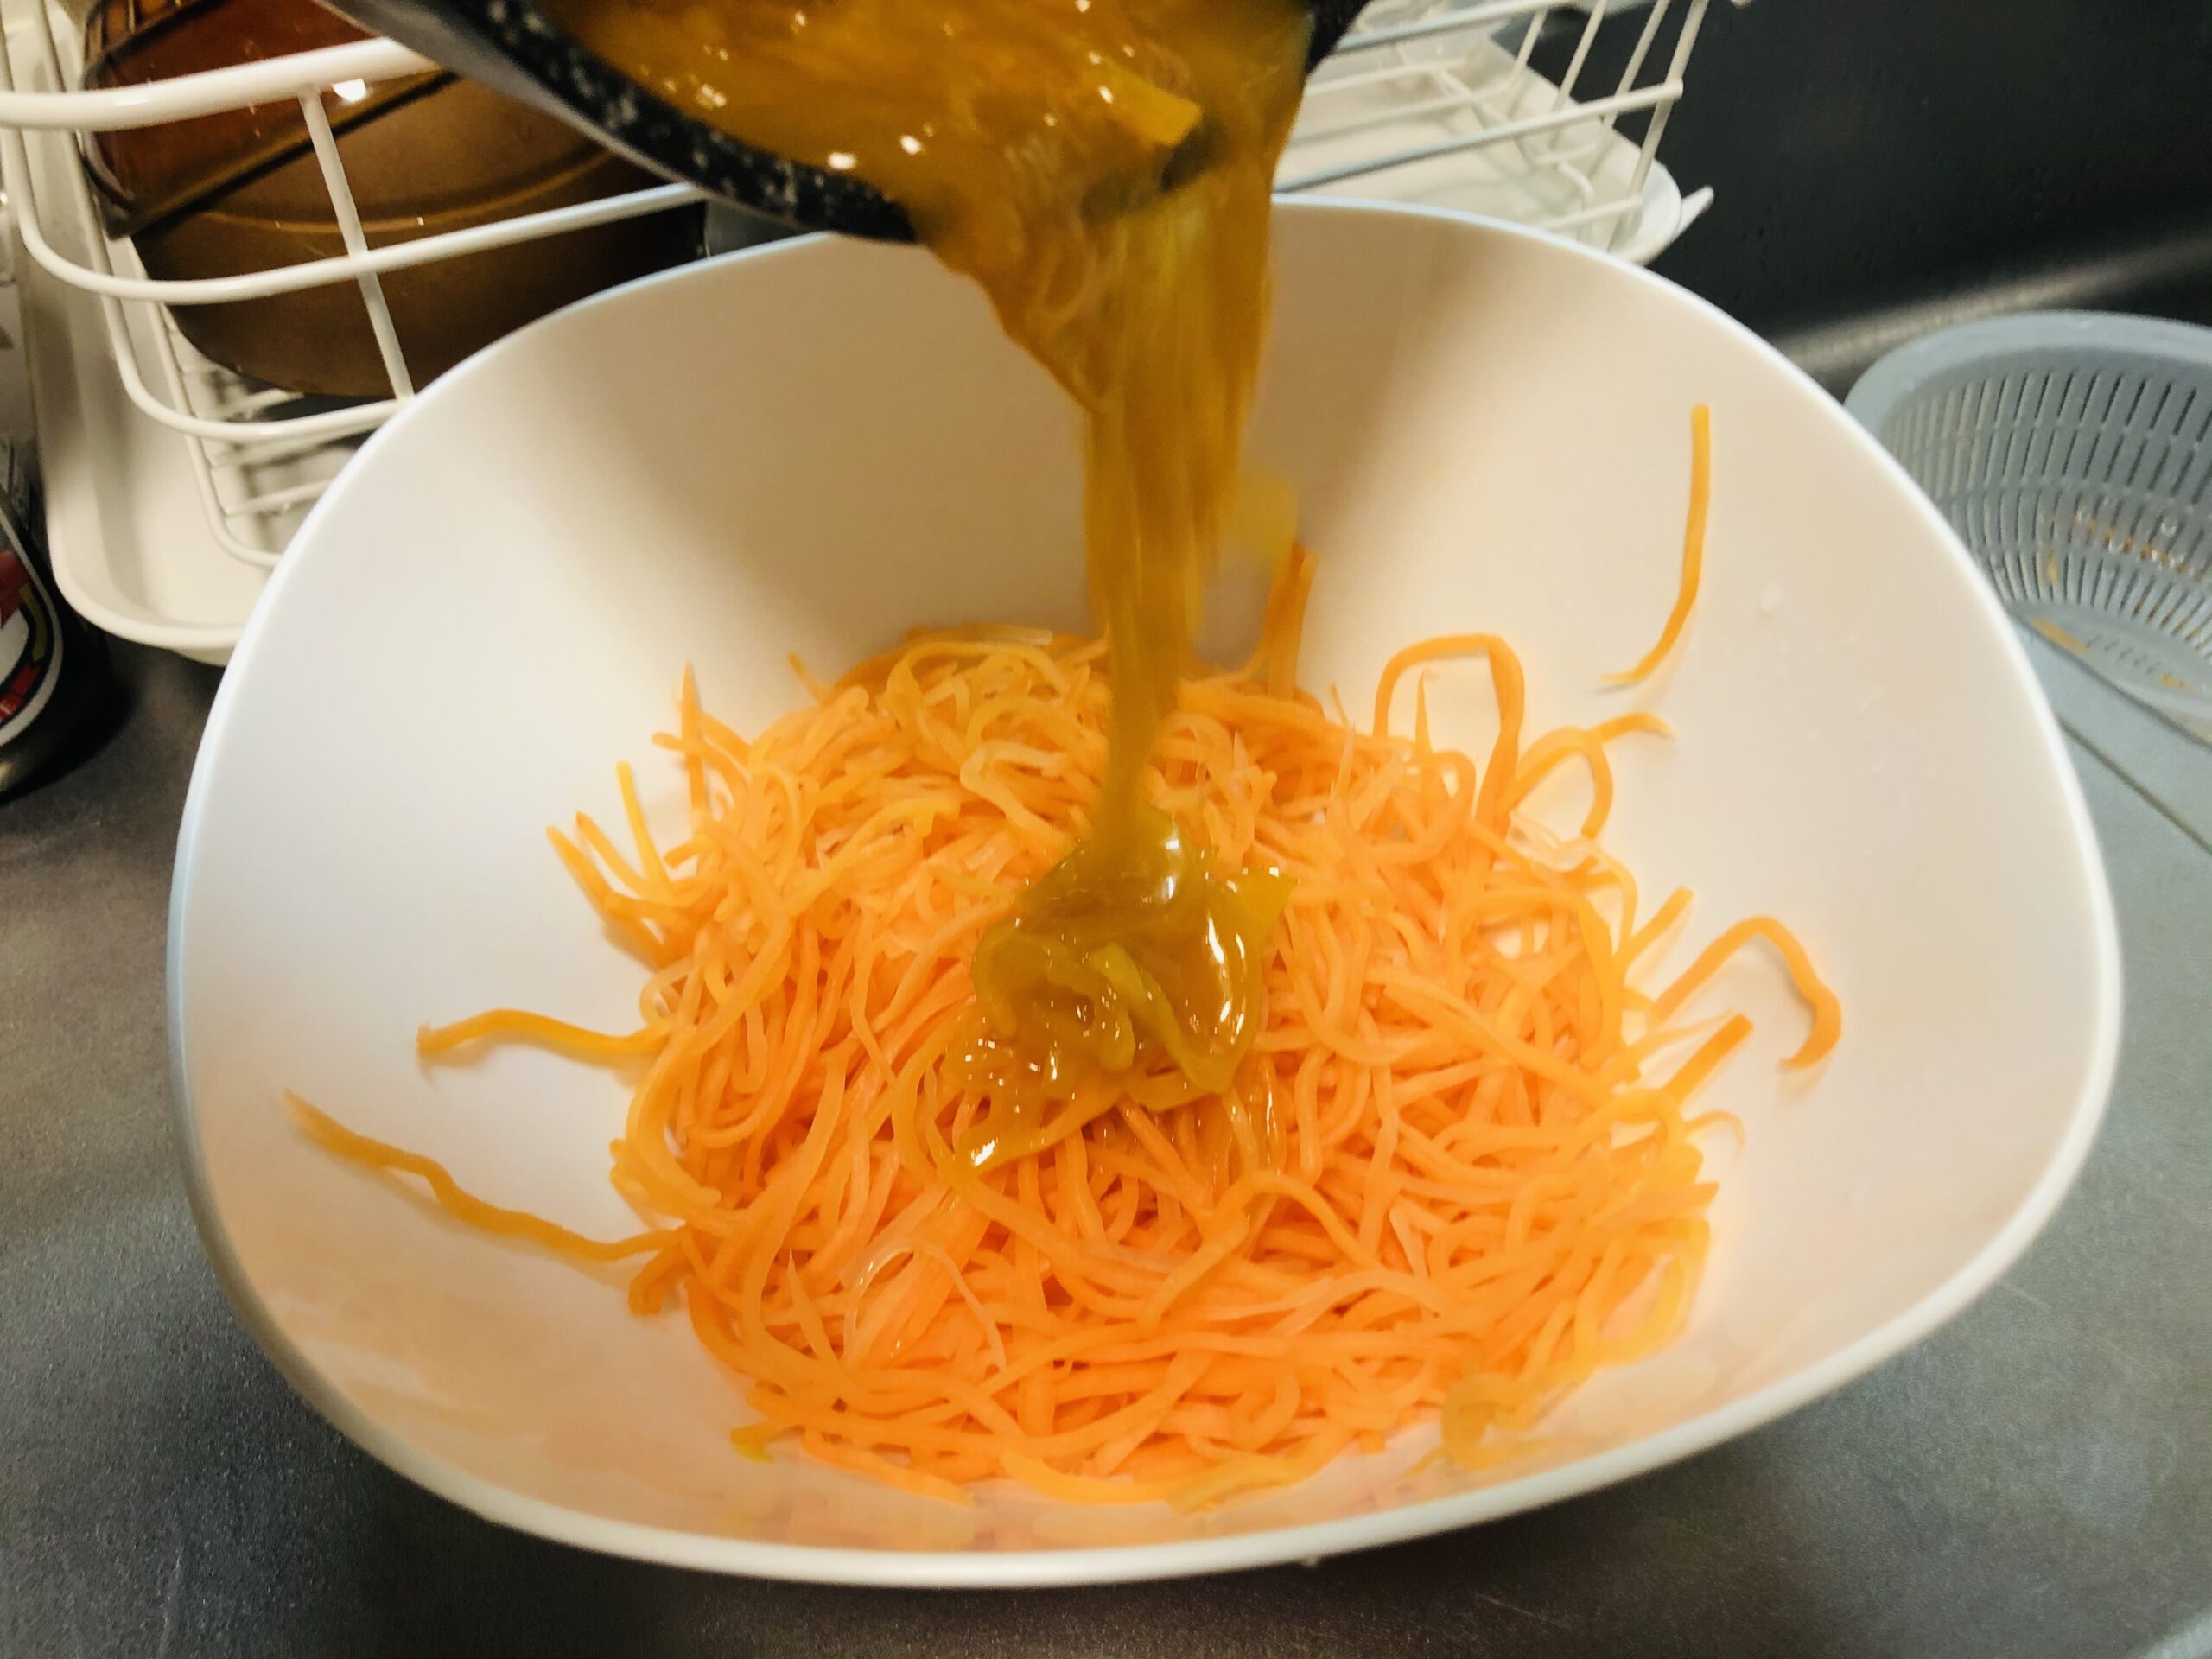 水気を拭き取ったニンジンの細切りに煮詰まった白ワインビネガー入りのオレンジジュースを入れている様子の画像です